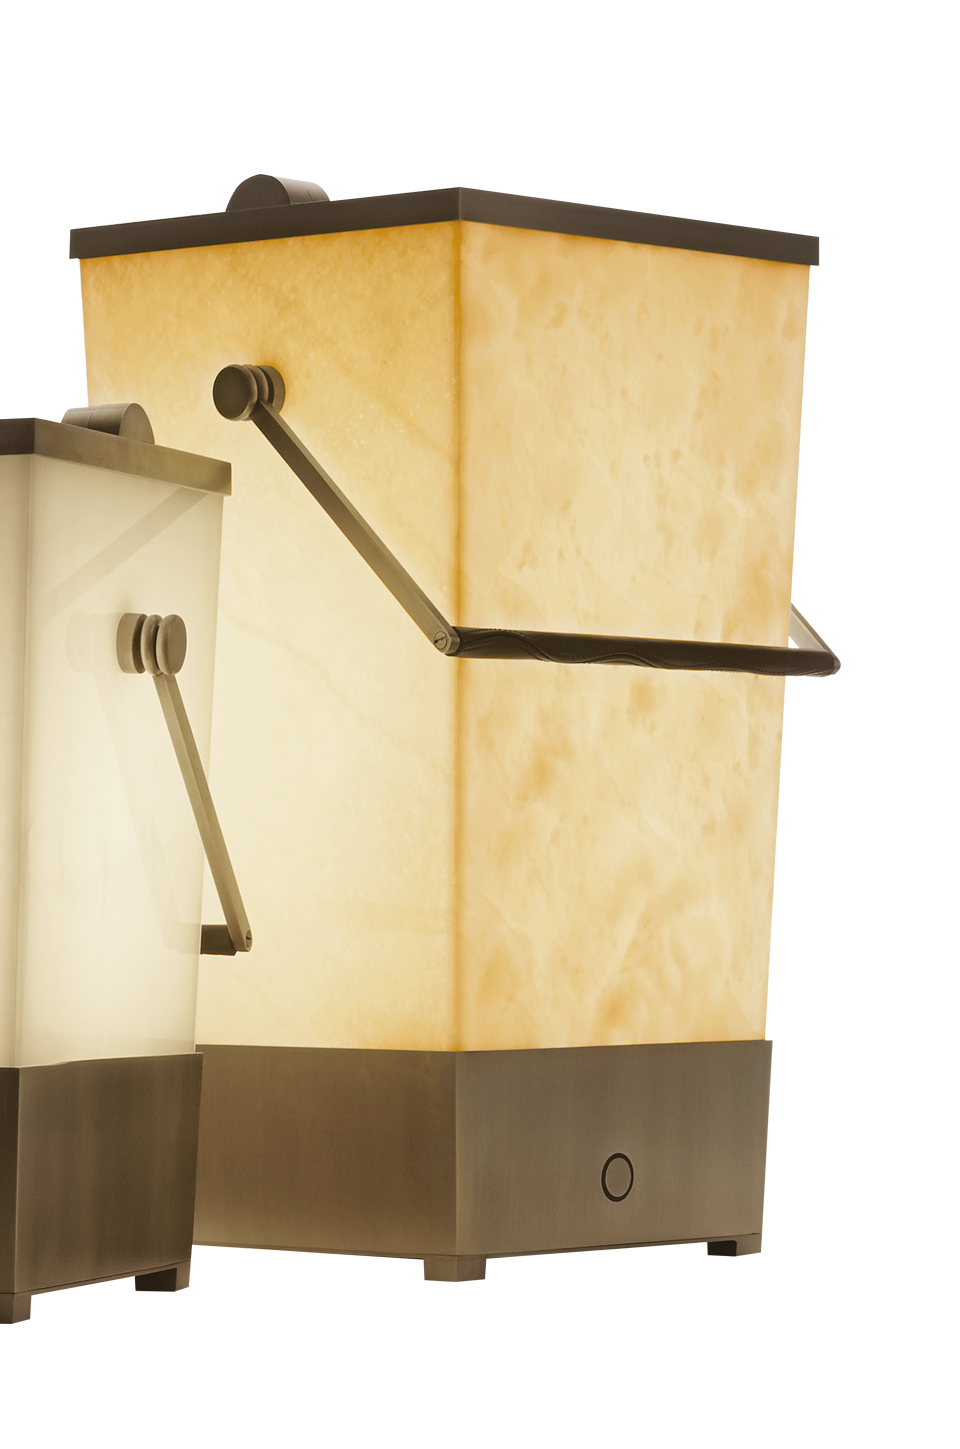 Hara — беспроводная напольная светодиодная лампа в форме корзины с бронзовой ручкой, обитой кожей, из каталога Promemoria | Promemoria